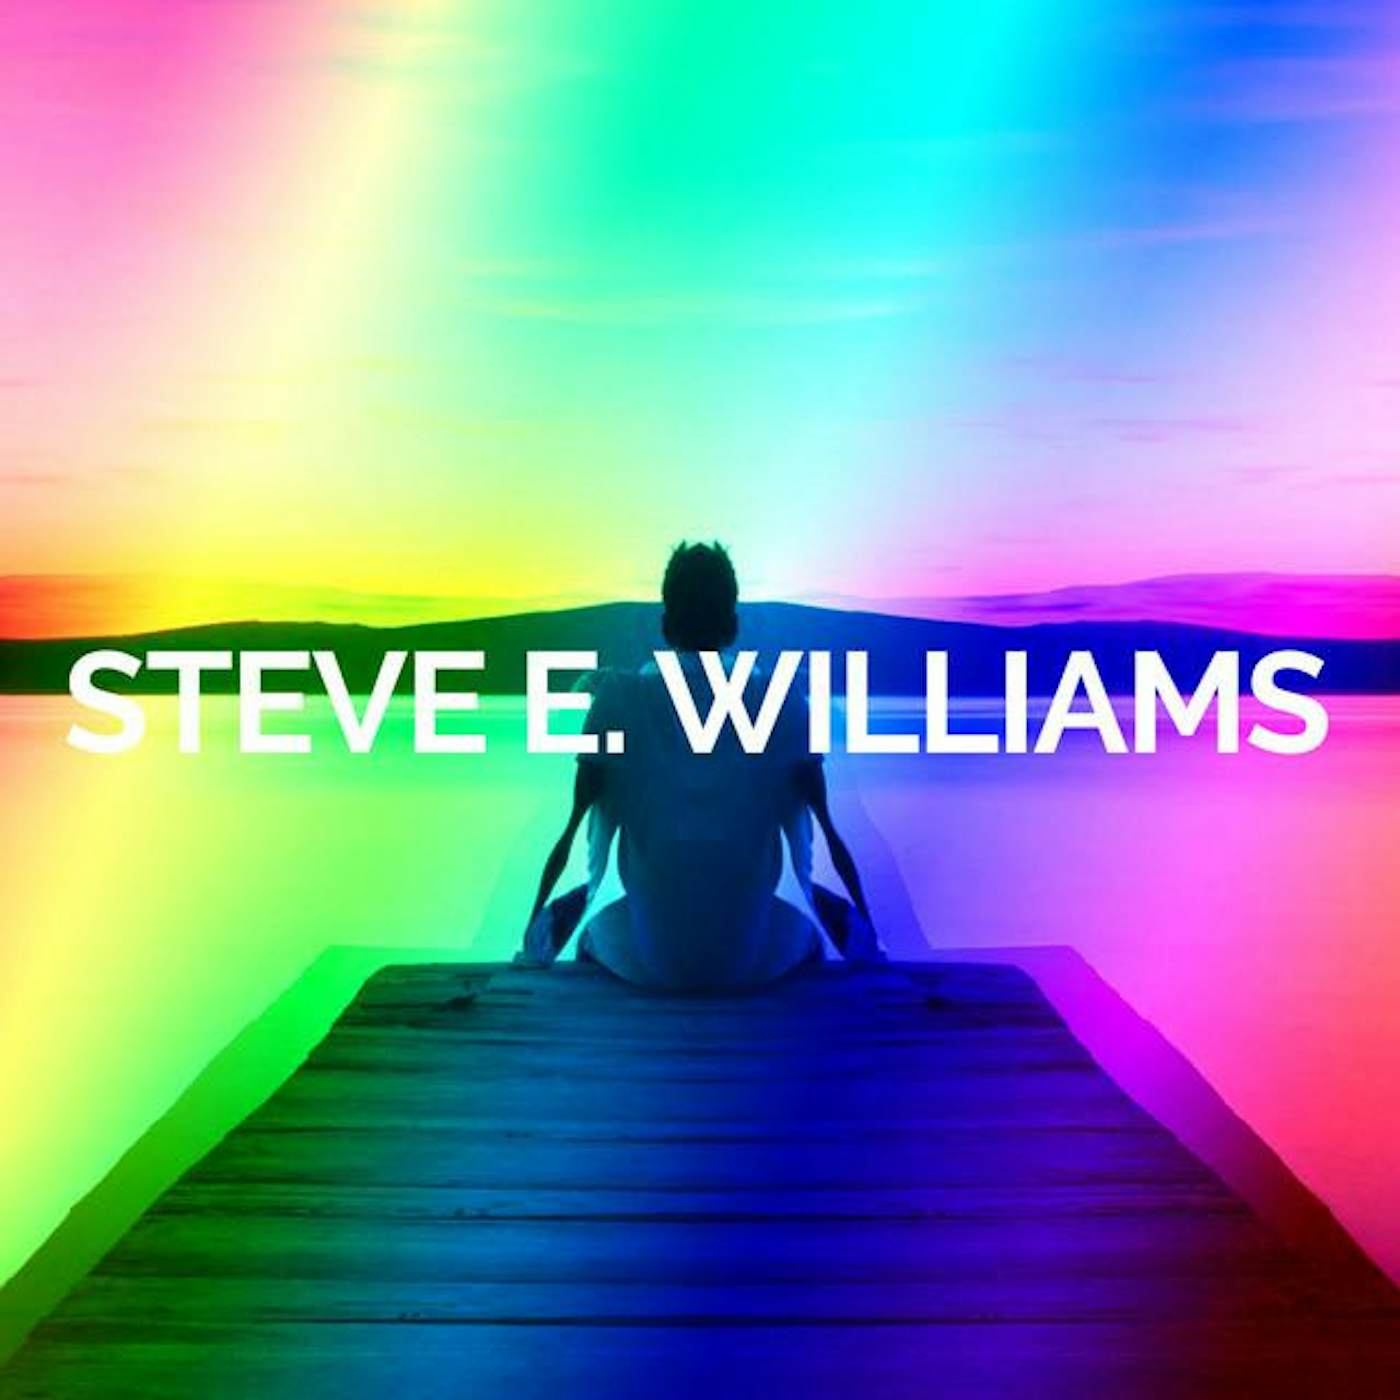 Steve E. Williams